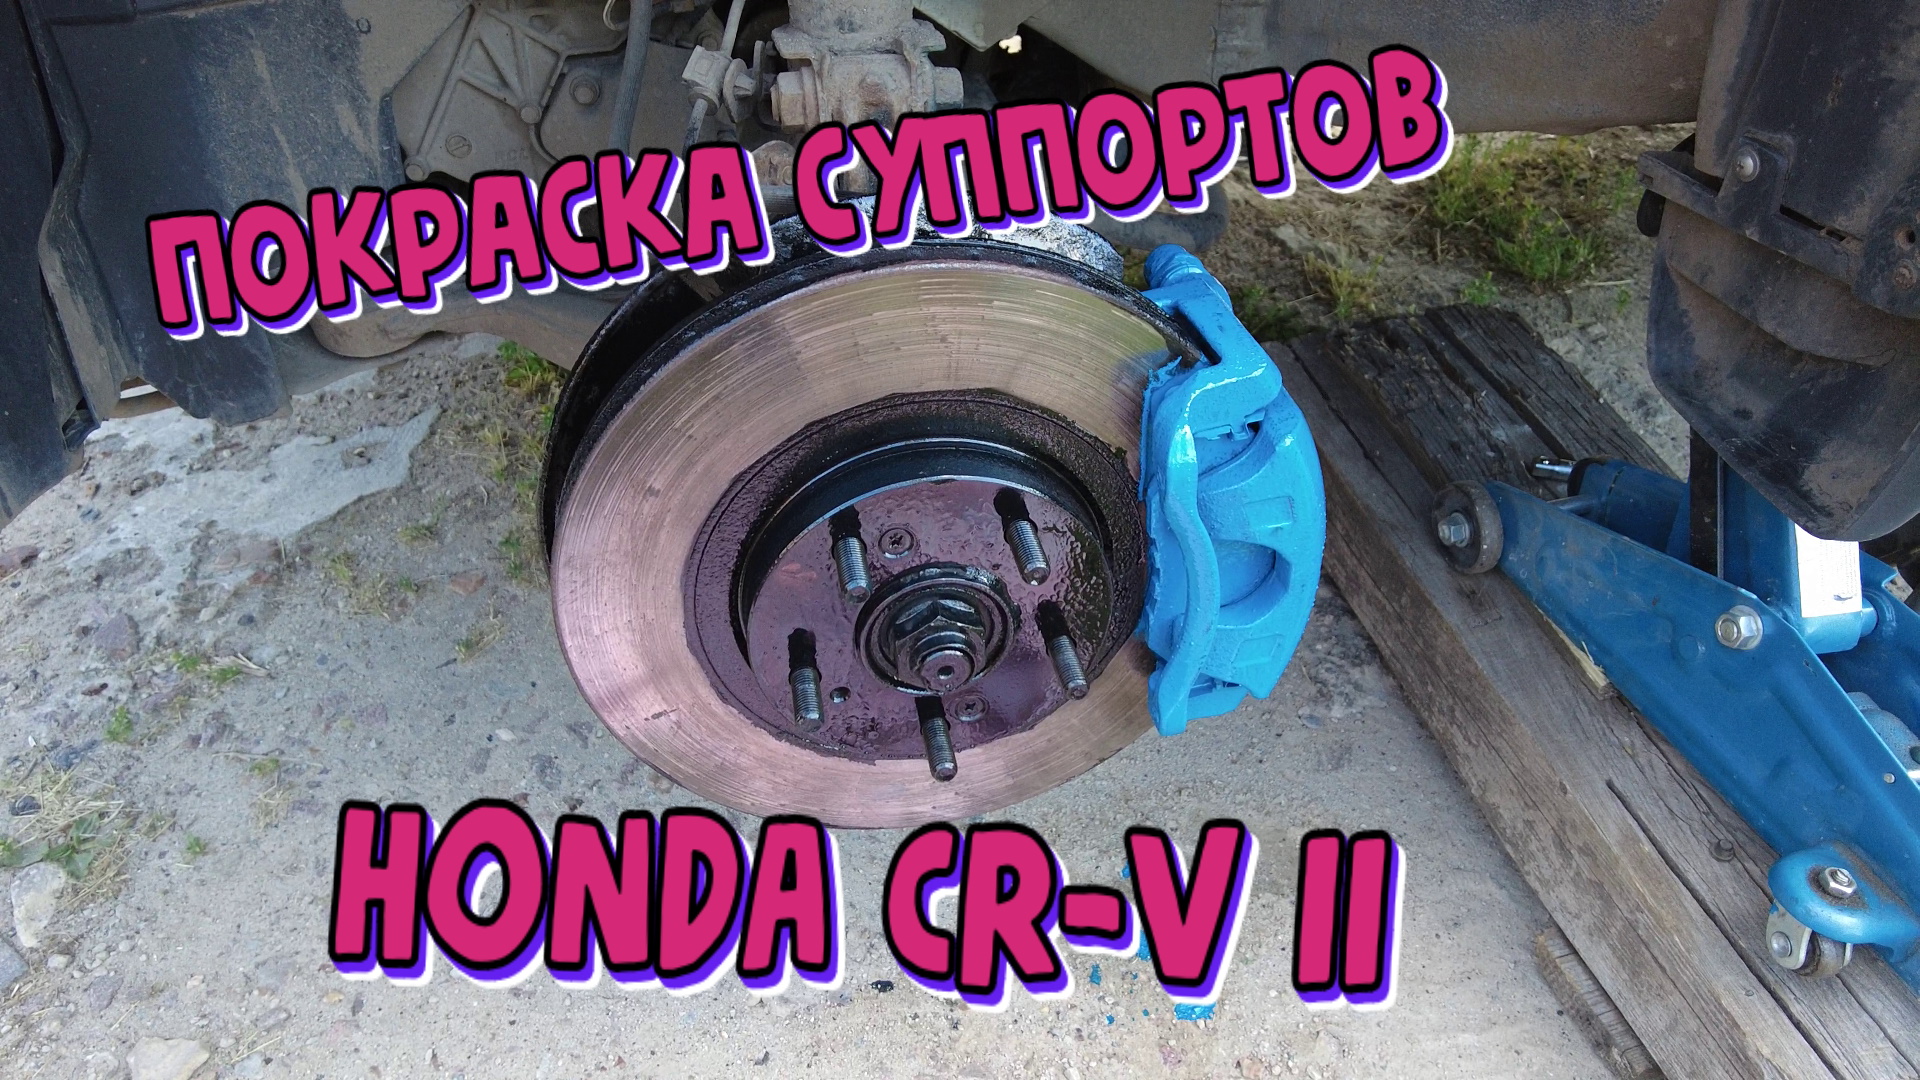 HONDA CR-V II. Покраска суппортов.